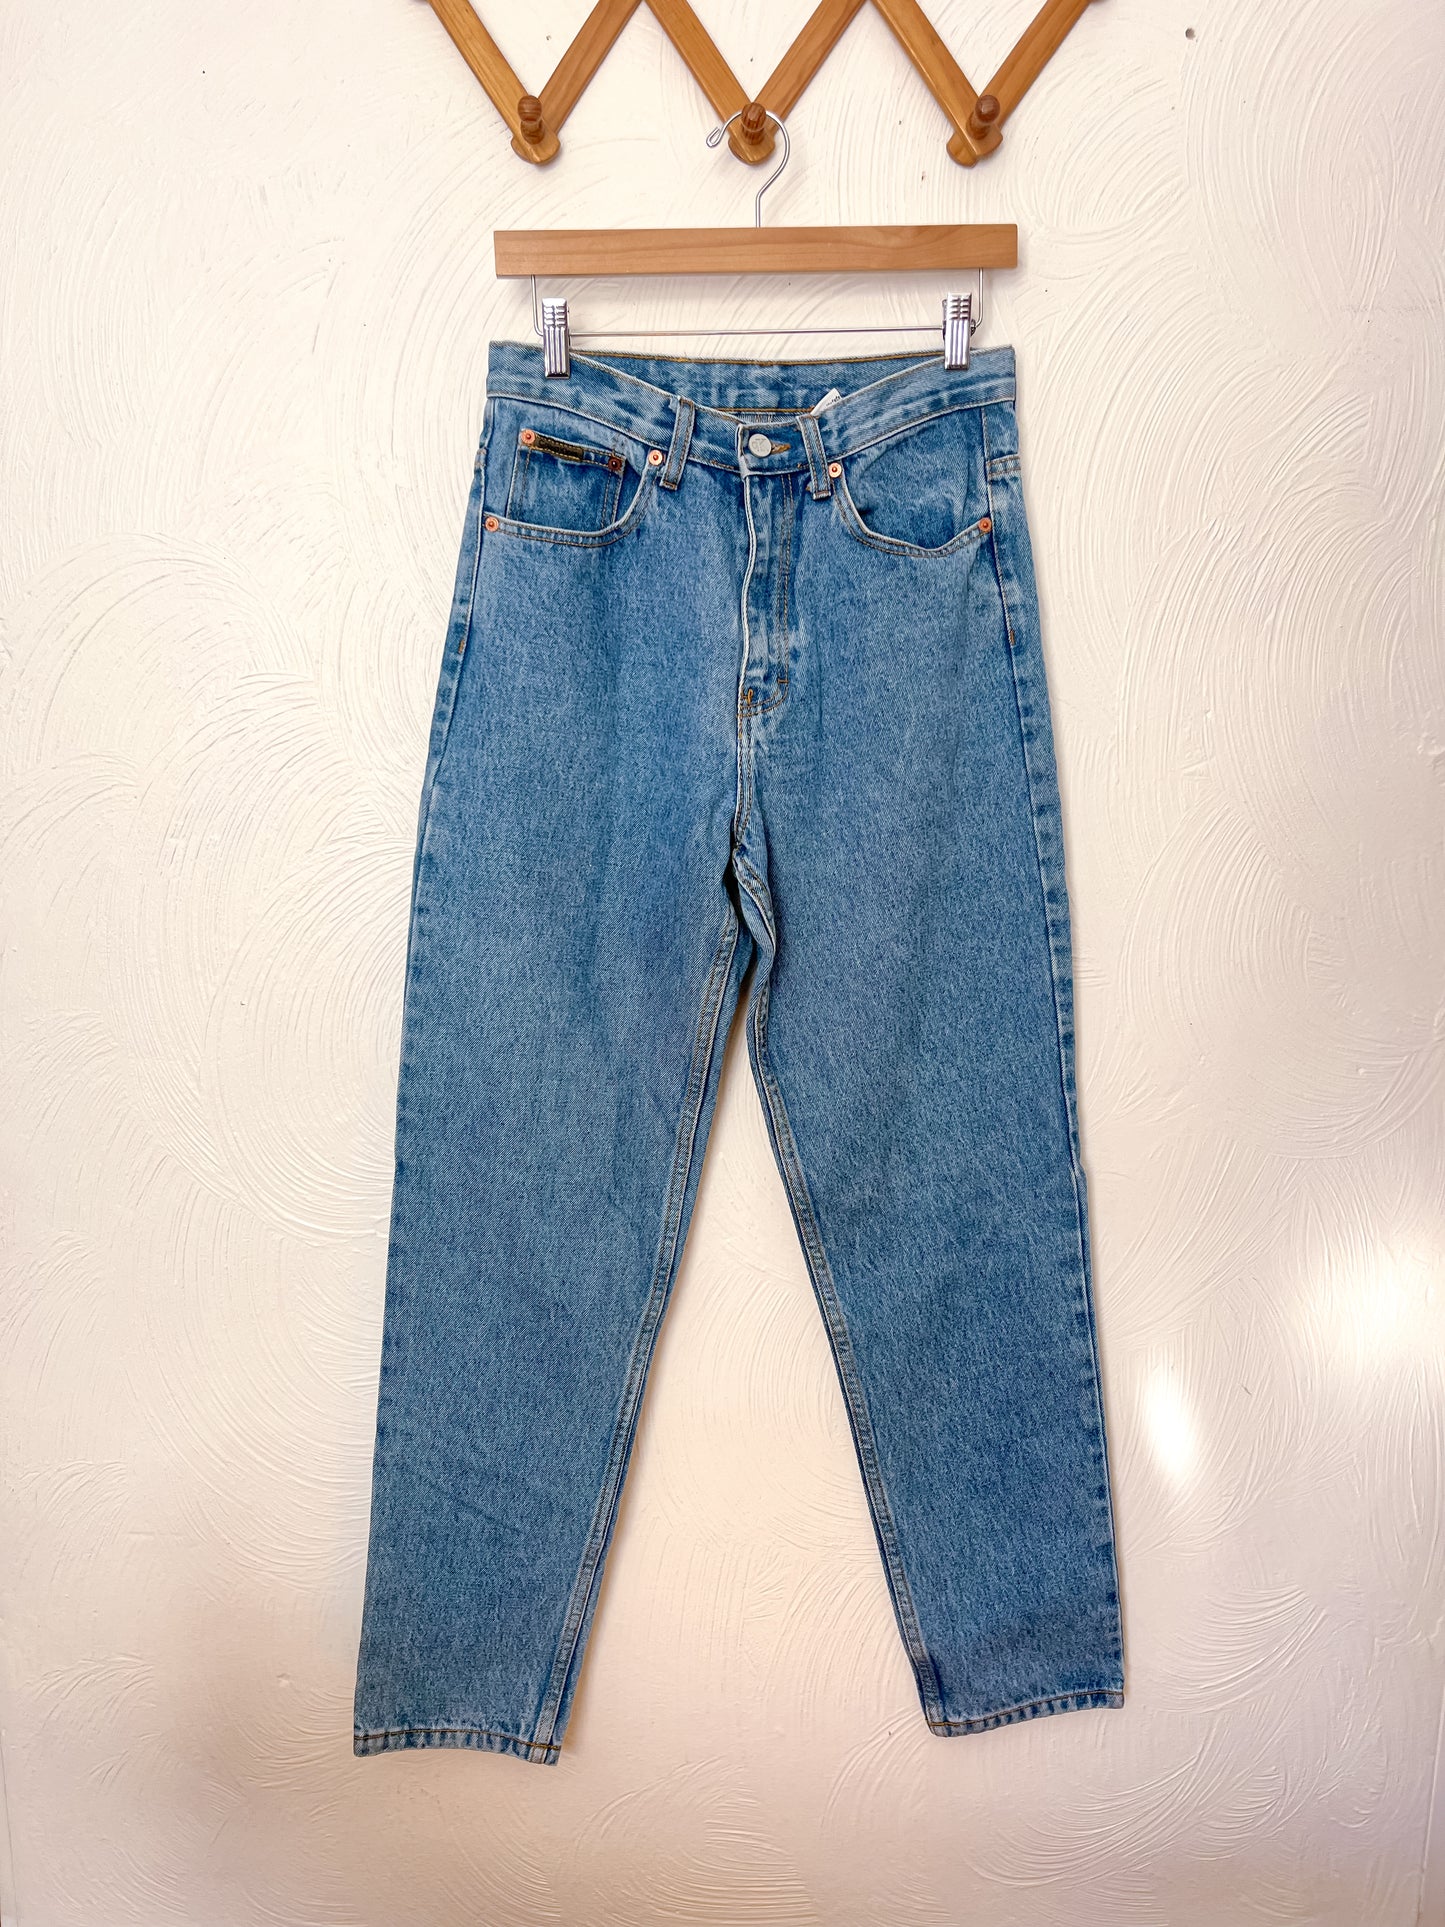 VTG Calvin Klein Jeans (10)